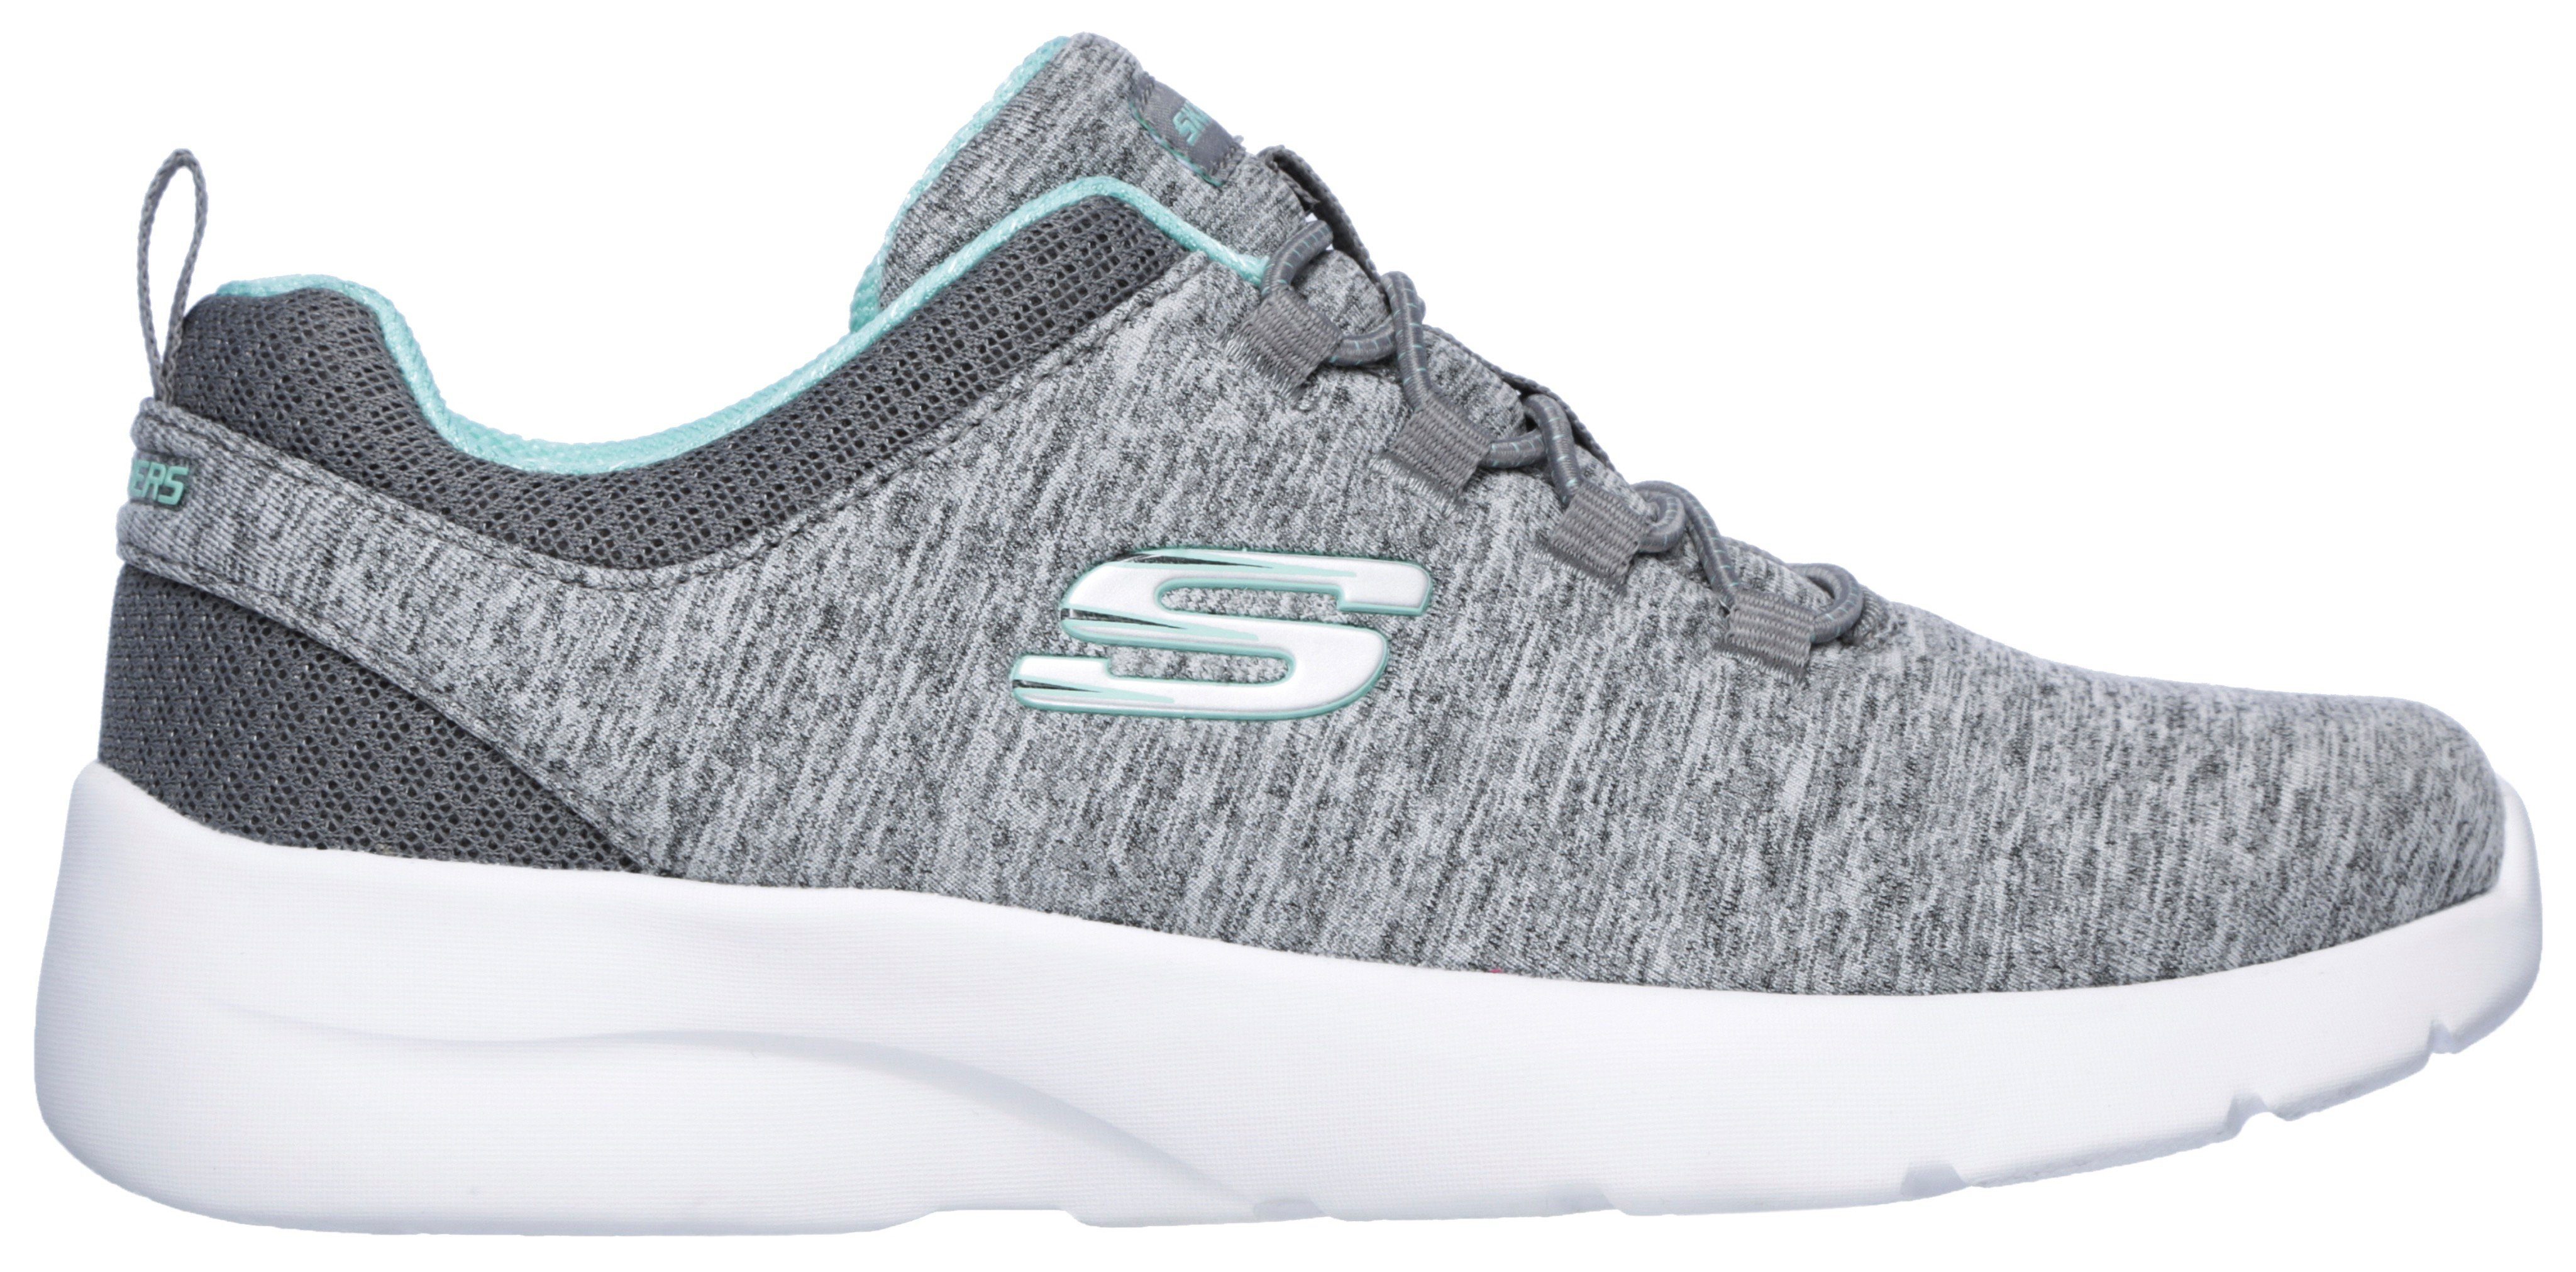 A FLASH DYNAMIGHT für Sneaker geeignet Slip-On grau-mint 2.0-IN Maschinenwäsche Skechers